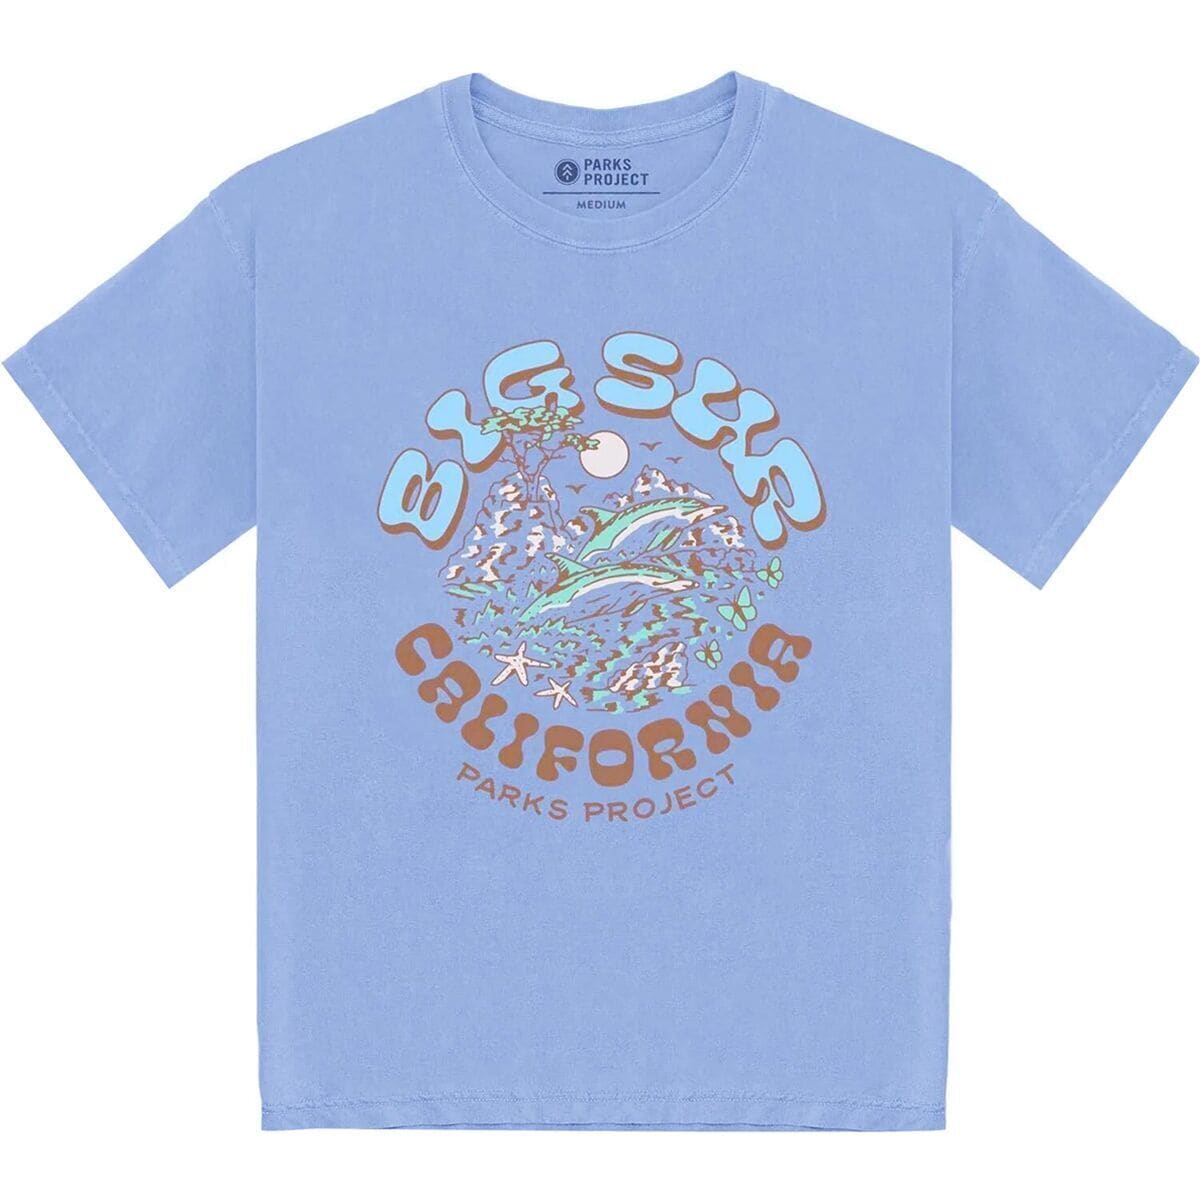 Parks Project Big Sur 90s Gift Shop T-Shirt